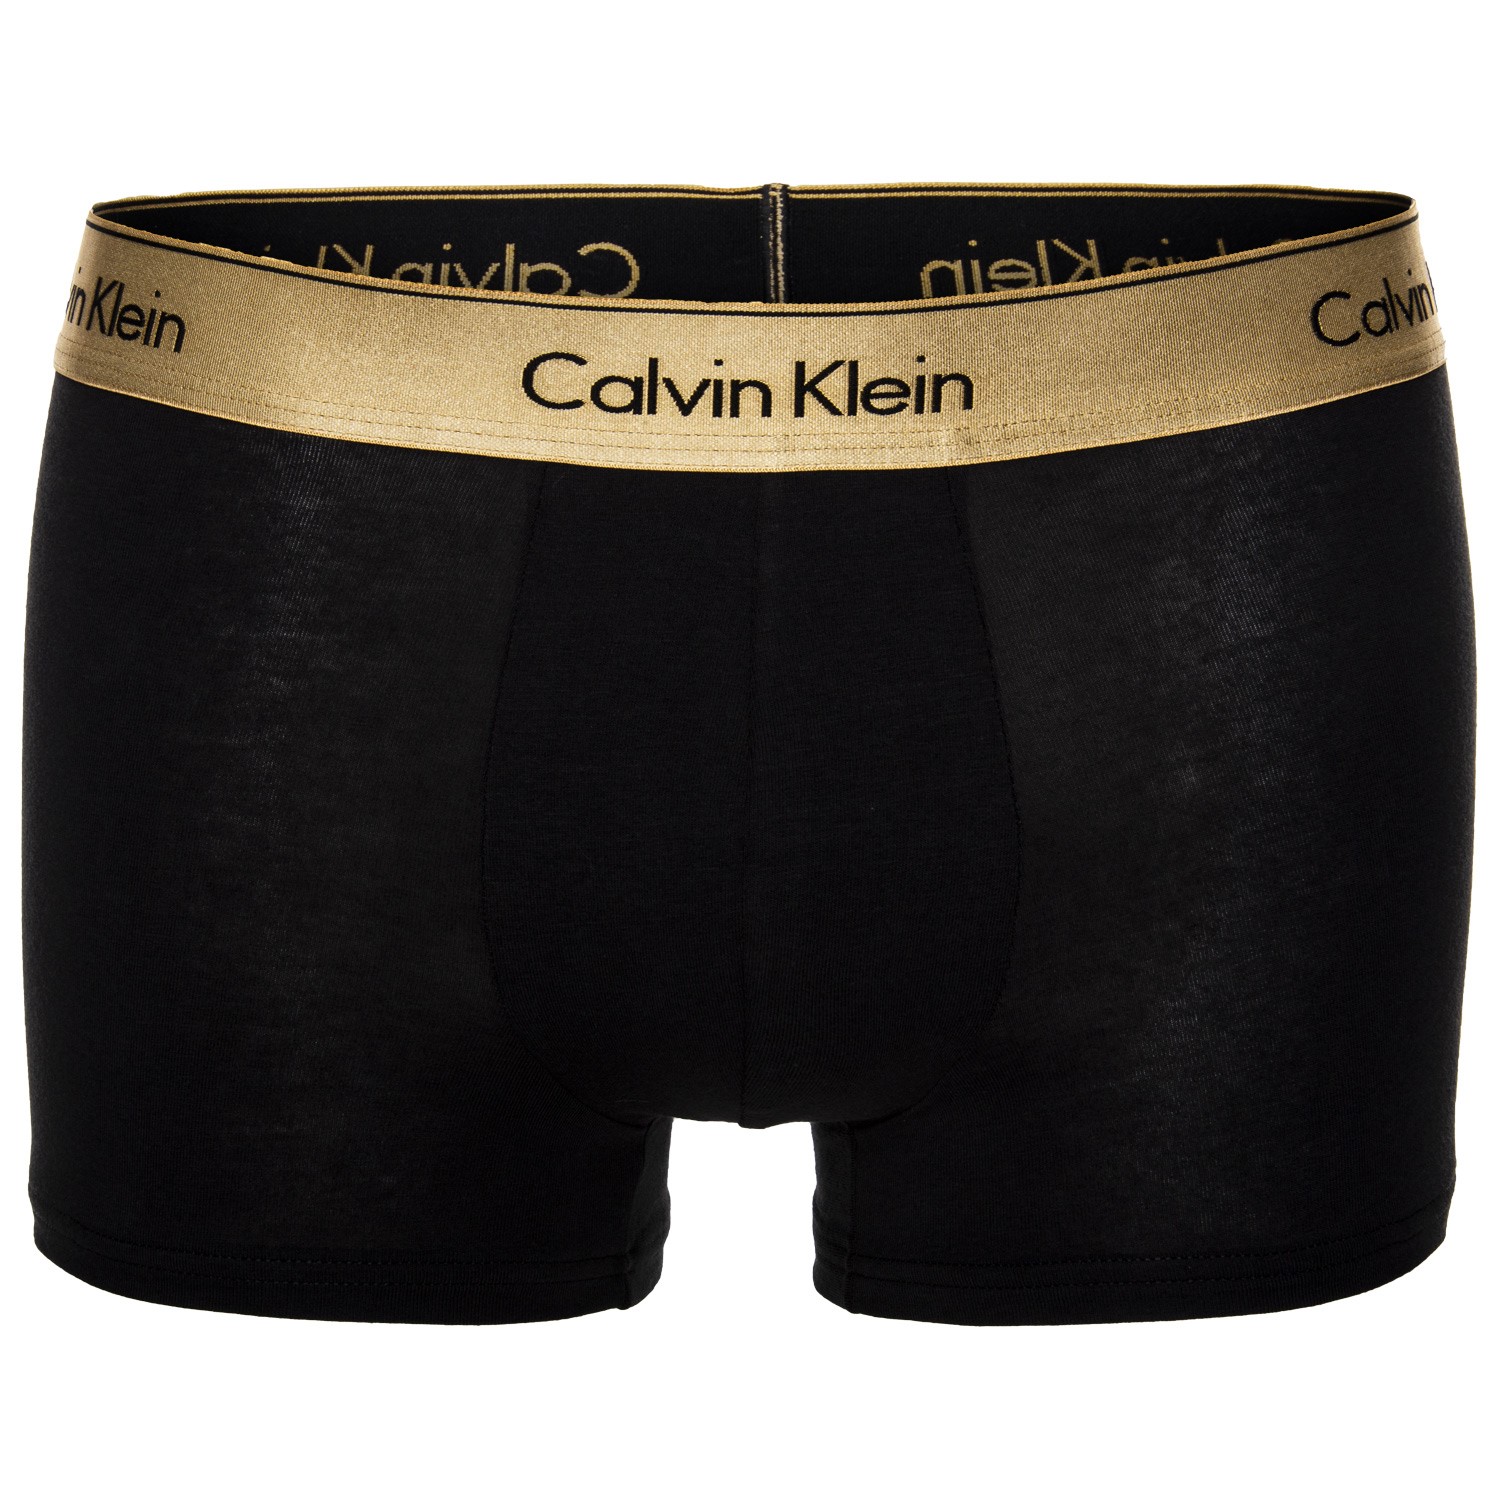 Calvin Klein Modern Cotton Stretch Singles Trunk